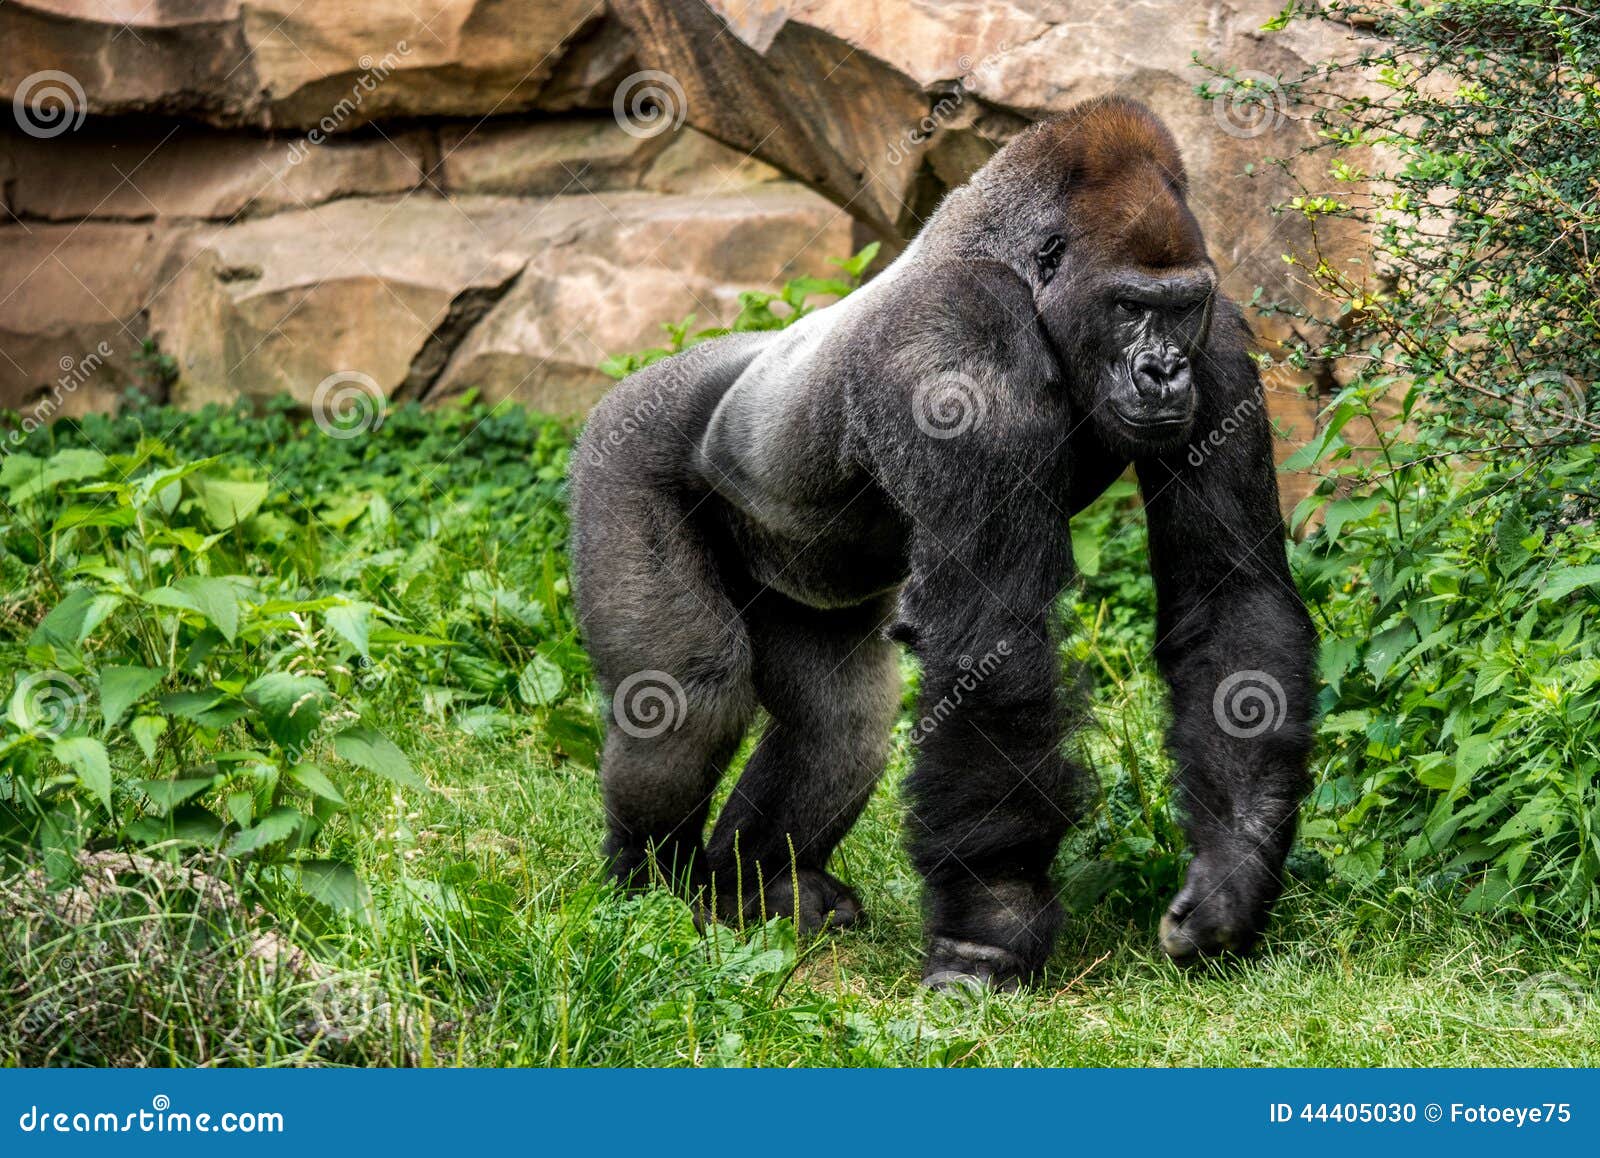 gorilla primate